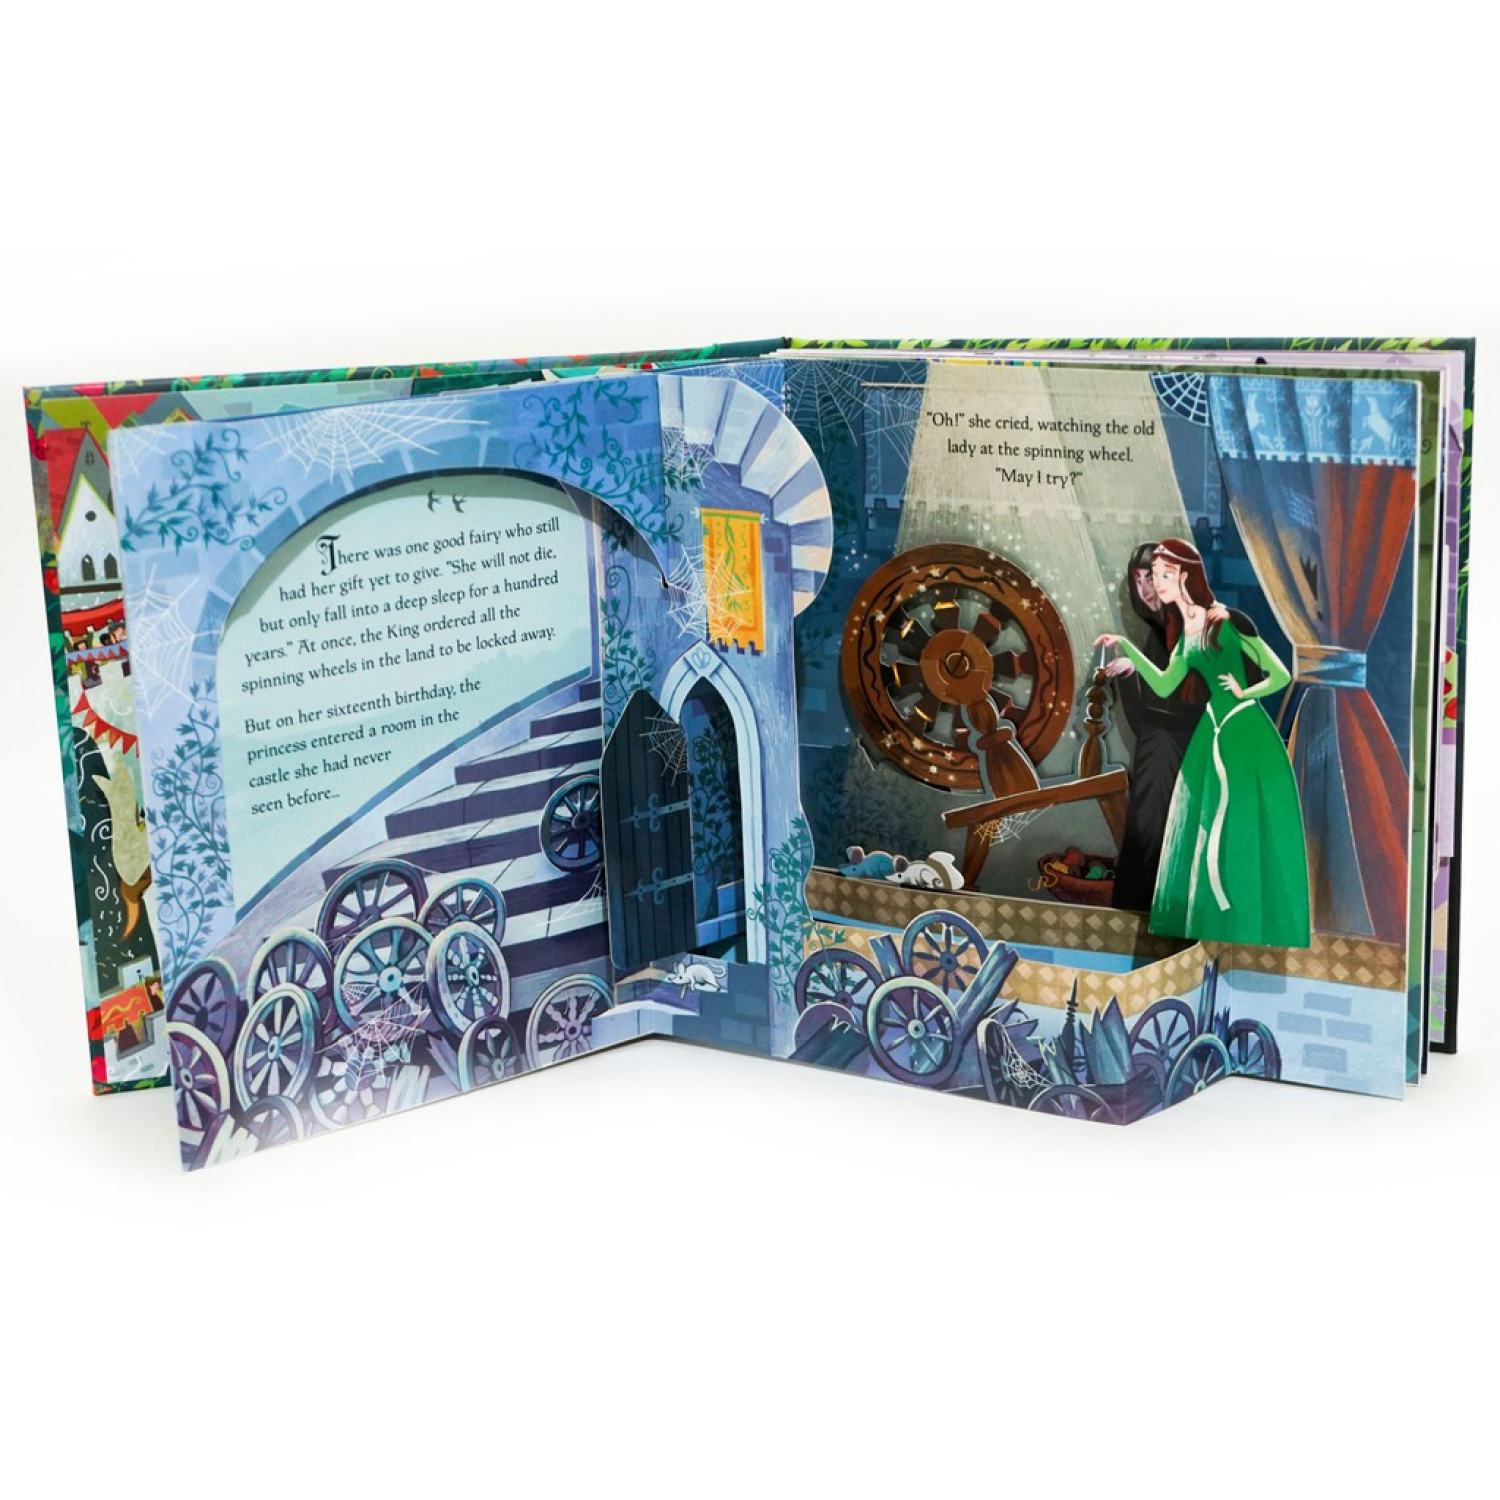 Sách tiếng Anh cho bé dạng 3D Pop-up của Usborne quyển Sleeping Beauty (Công chúa ngủ trong rừng), Dinosaurs, Birds, Garden, Seasons, Cinderella (Cô bé Lọ Lem), Snow White (Bạch Tuyết) và Jungle